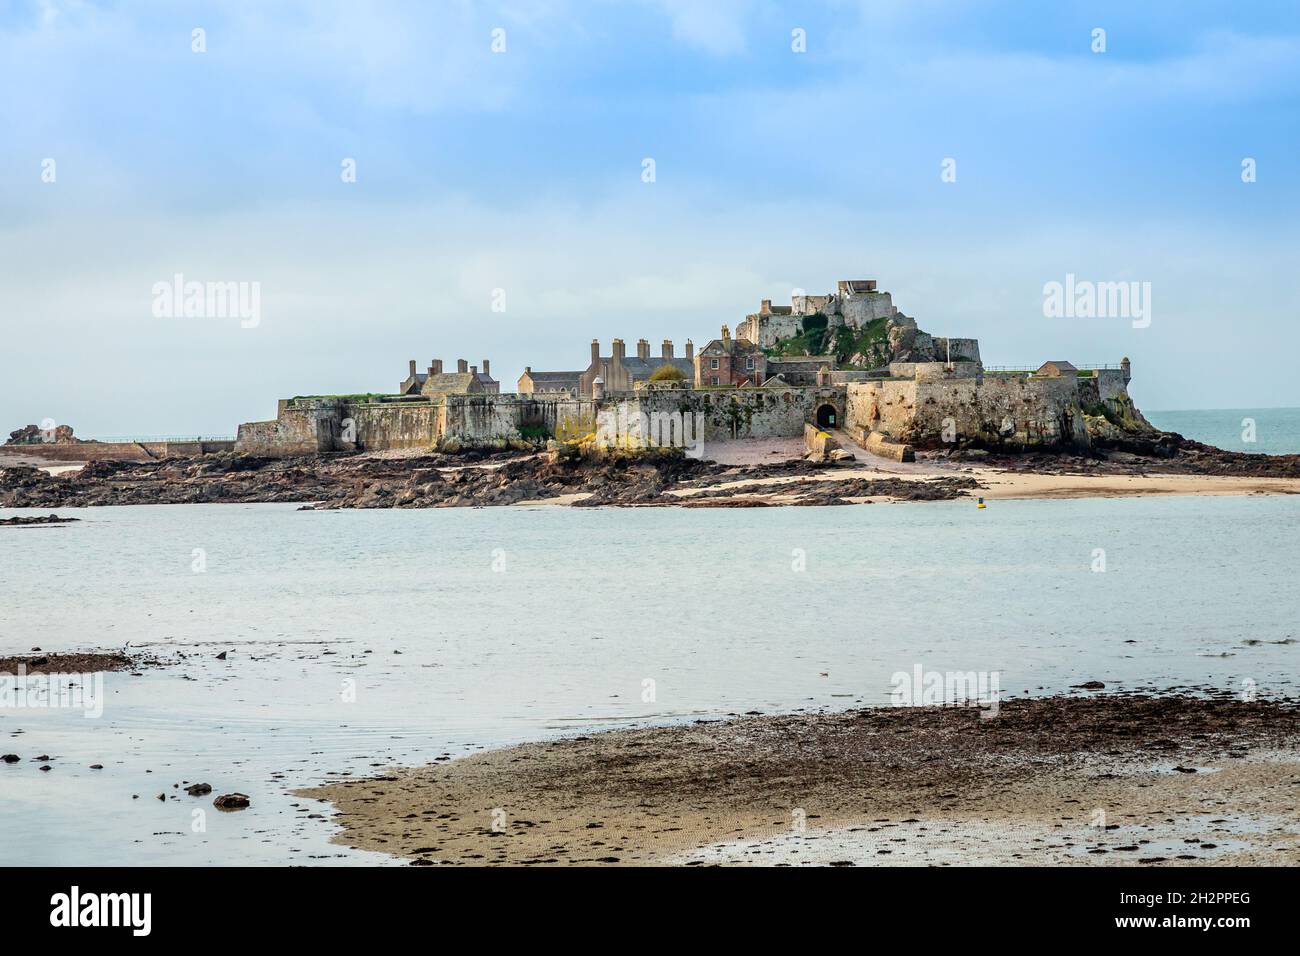 Elizabeth Castle in a low tide waters, Saint Helier, bailiwick of Jersey, Channel Islands Stock Photo